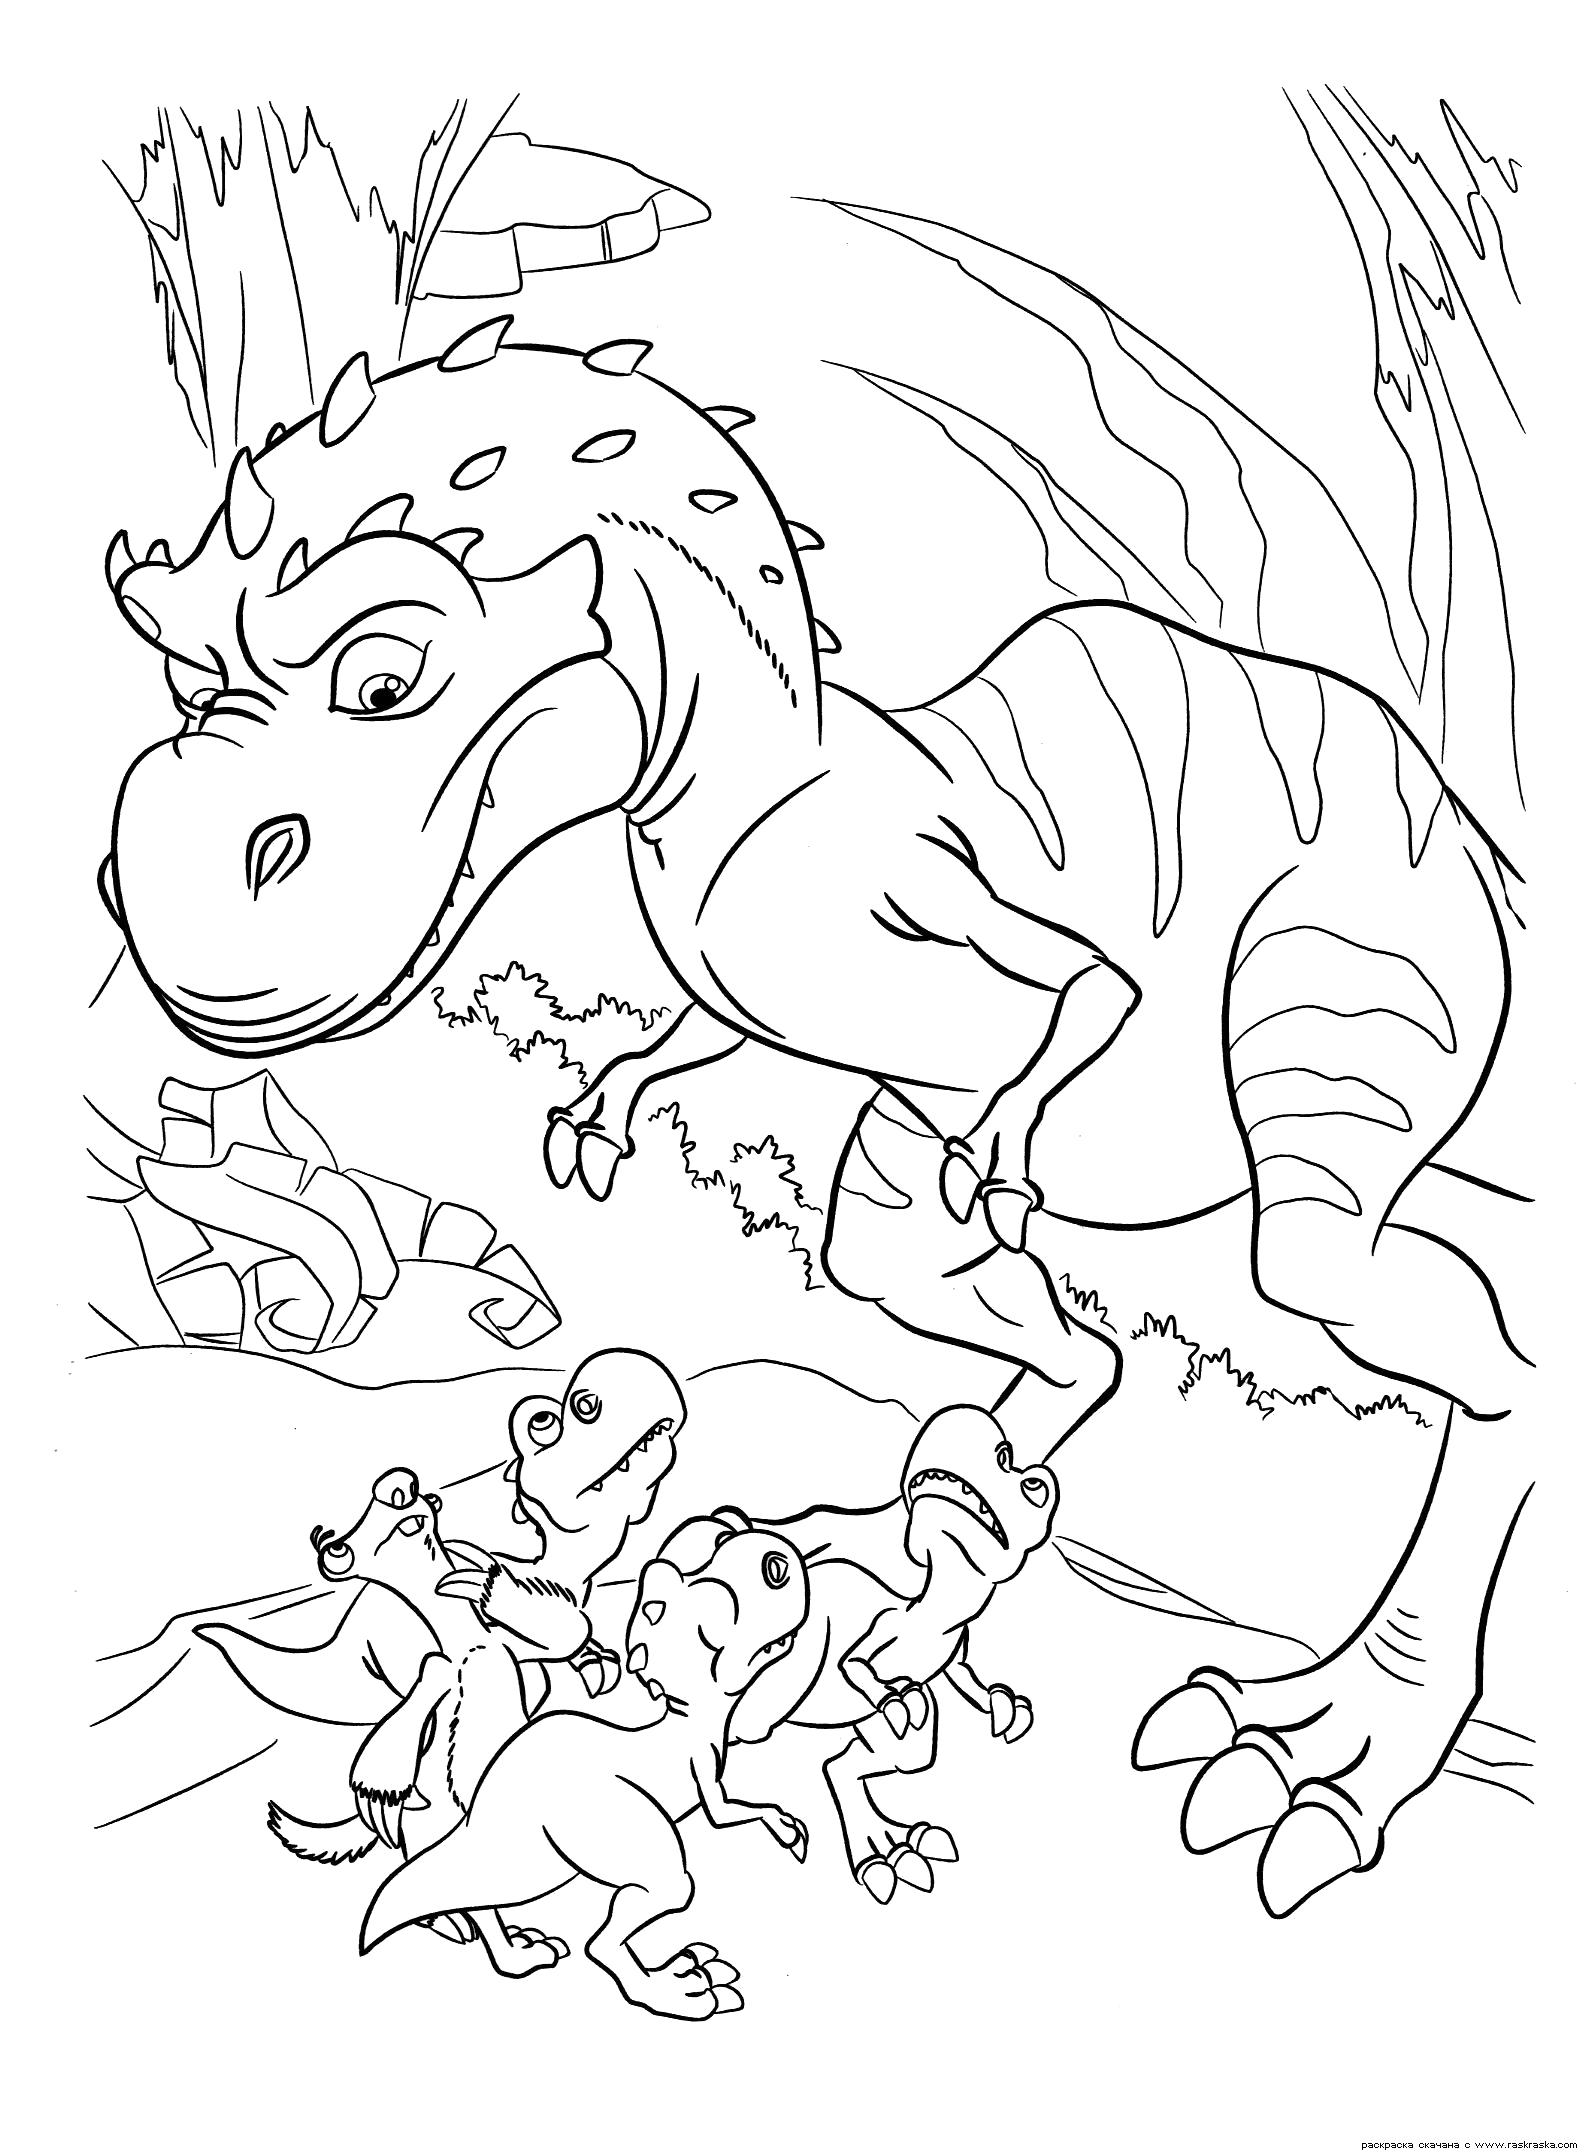 Раскраска Раскраска Мама динозавр. Раскраска Динозаврики из мультика Эра Динозавров, Ледниковый период 3, Сид ленивец разукрашка для детей. динозавр